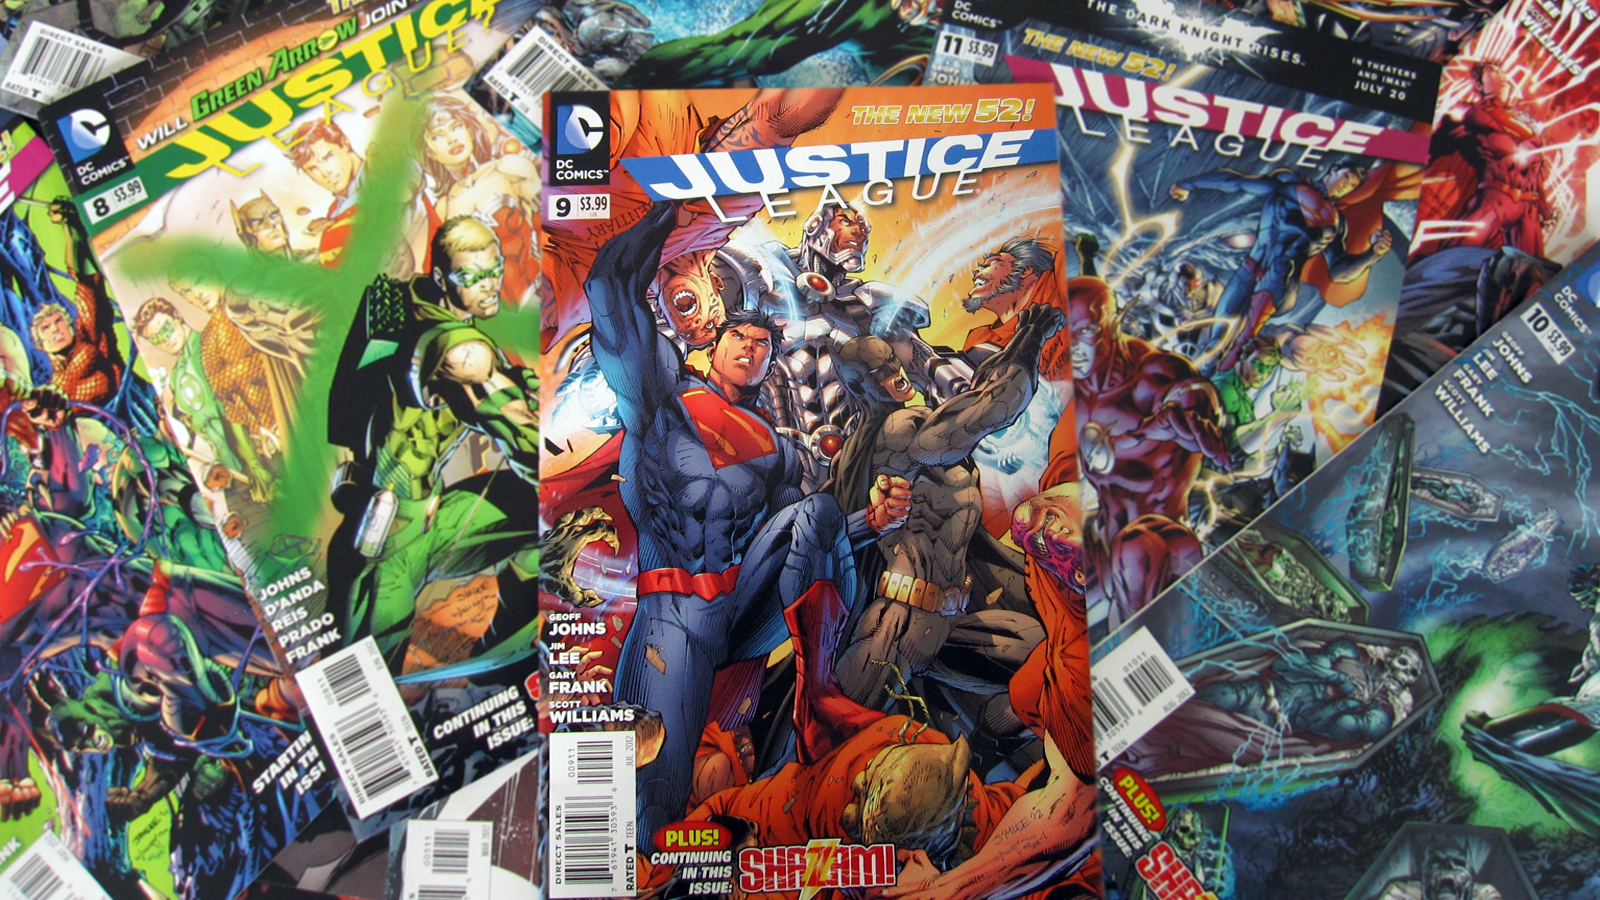 Batman New Wallpaper HD Justice League The